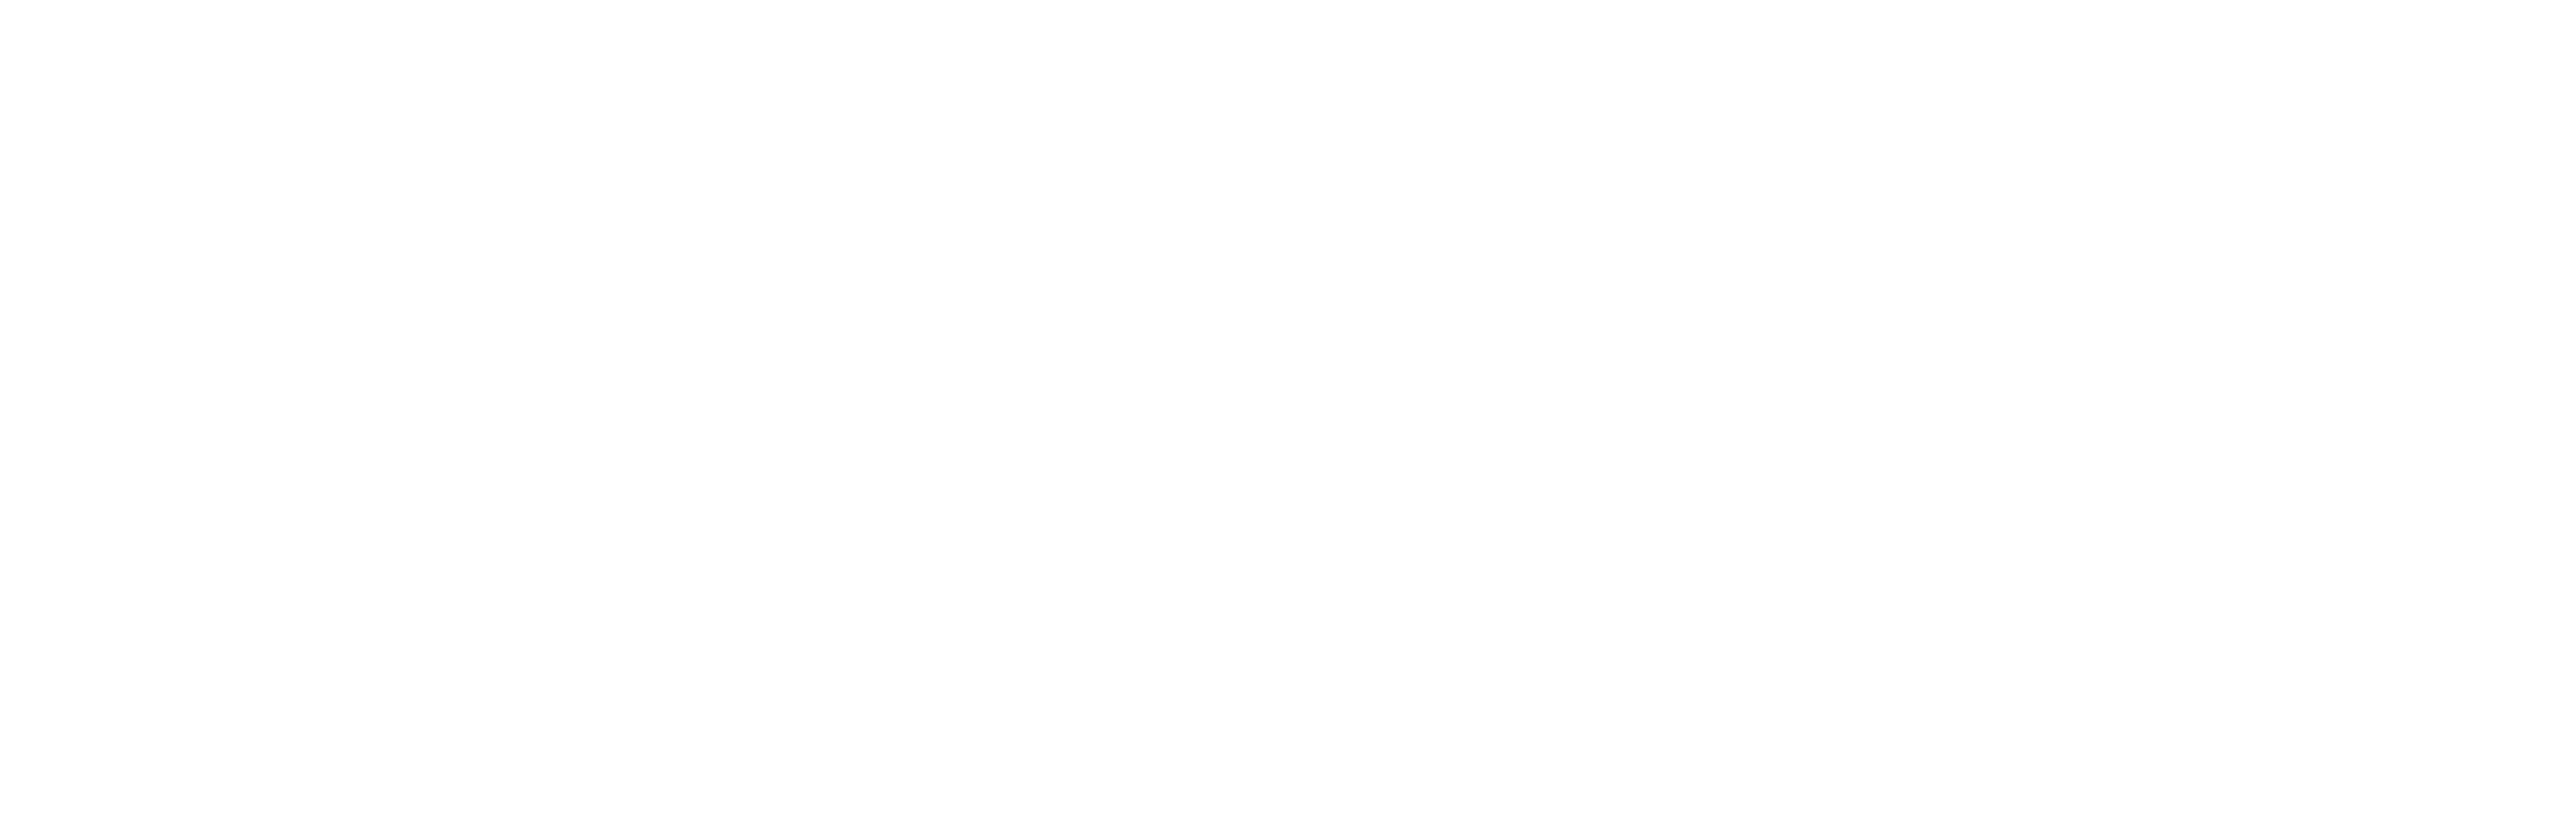 EveryMarket Reviews - 1 Review of Everymarket.com